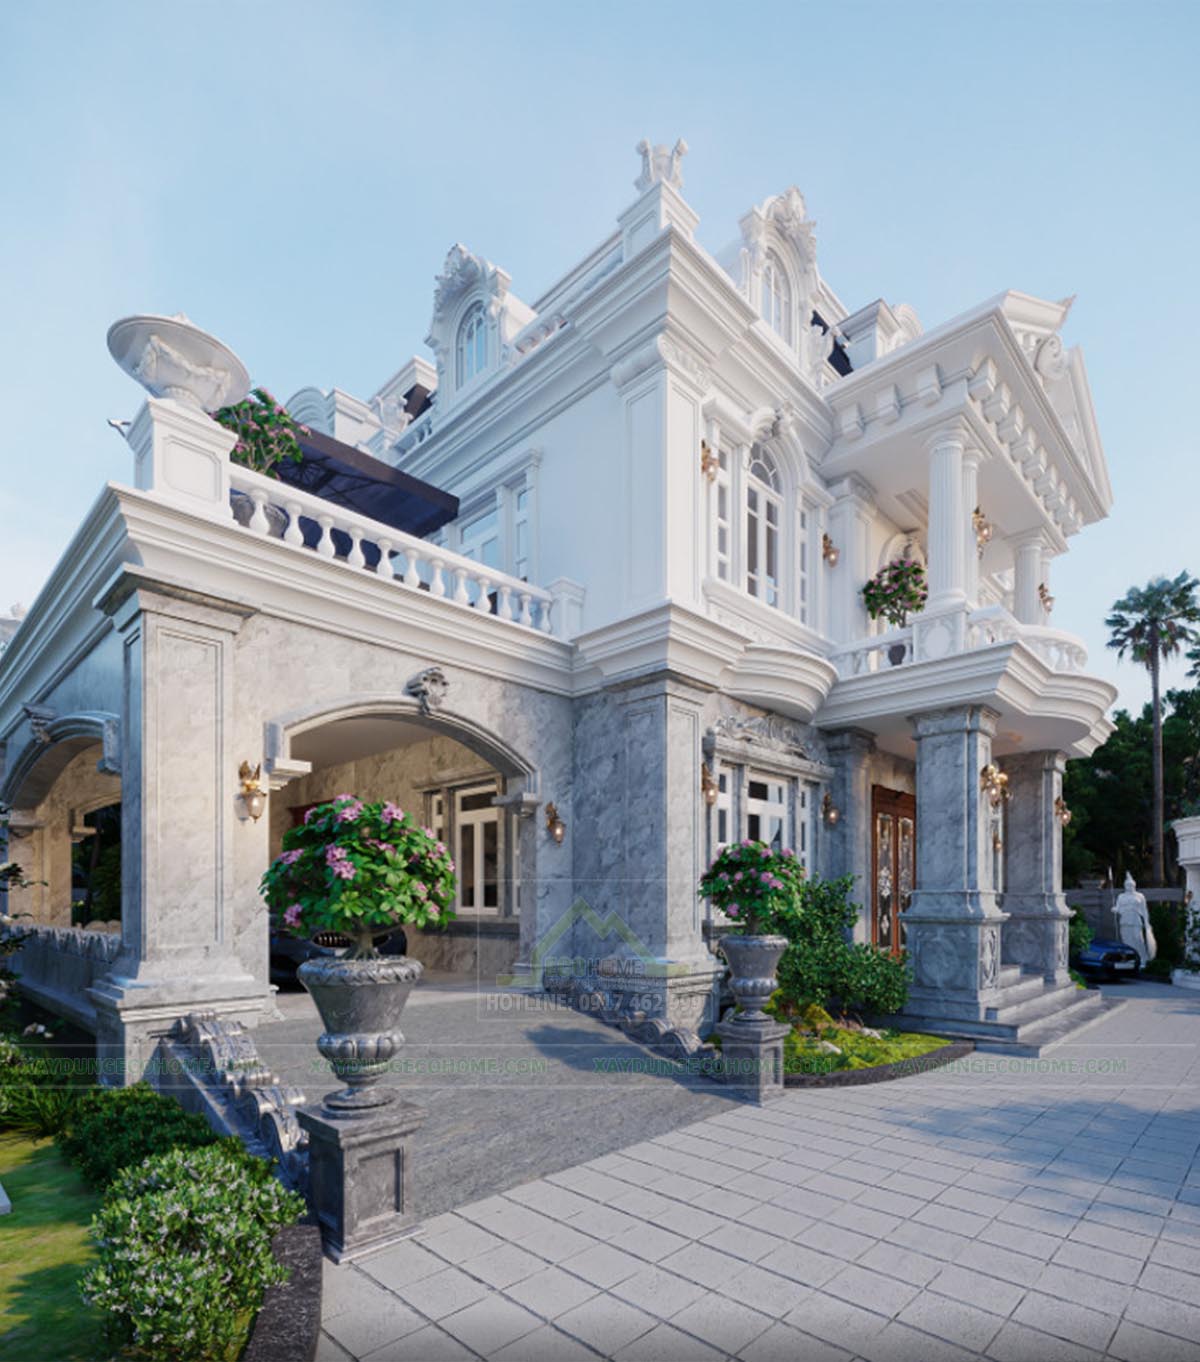 Thiết kế biệt thự tại thành phố Bắc Giang